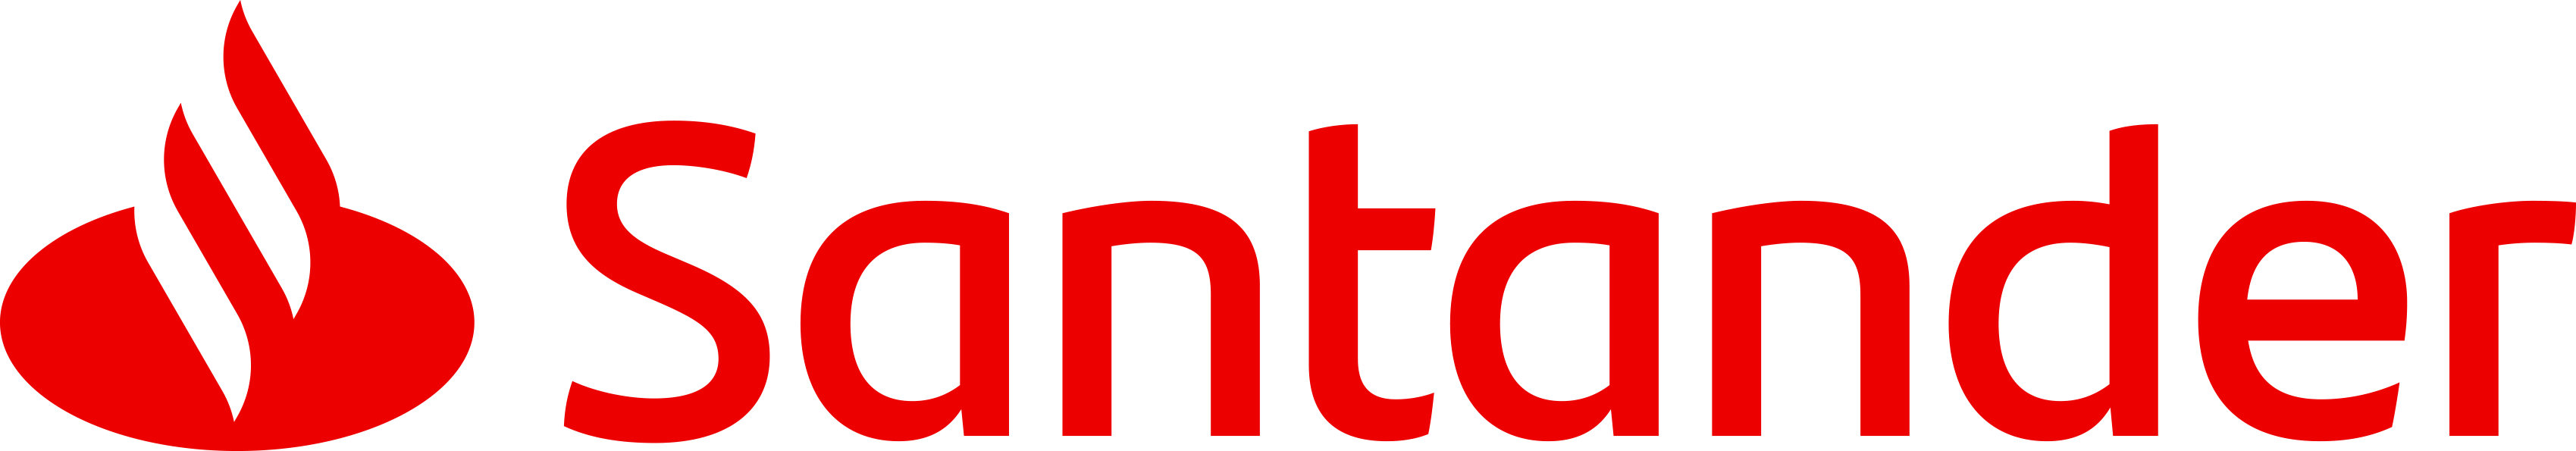 Logo Banco Santander.png